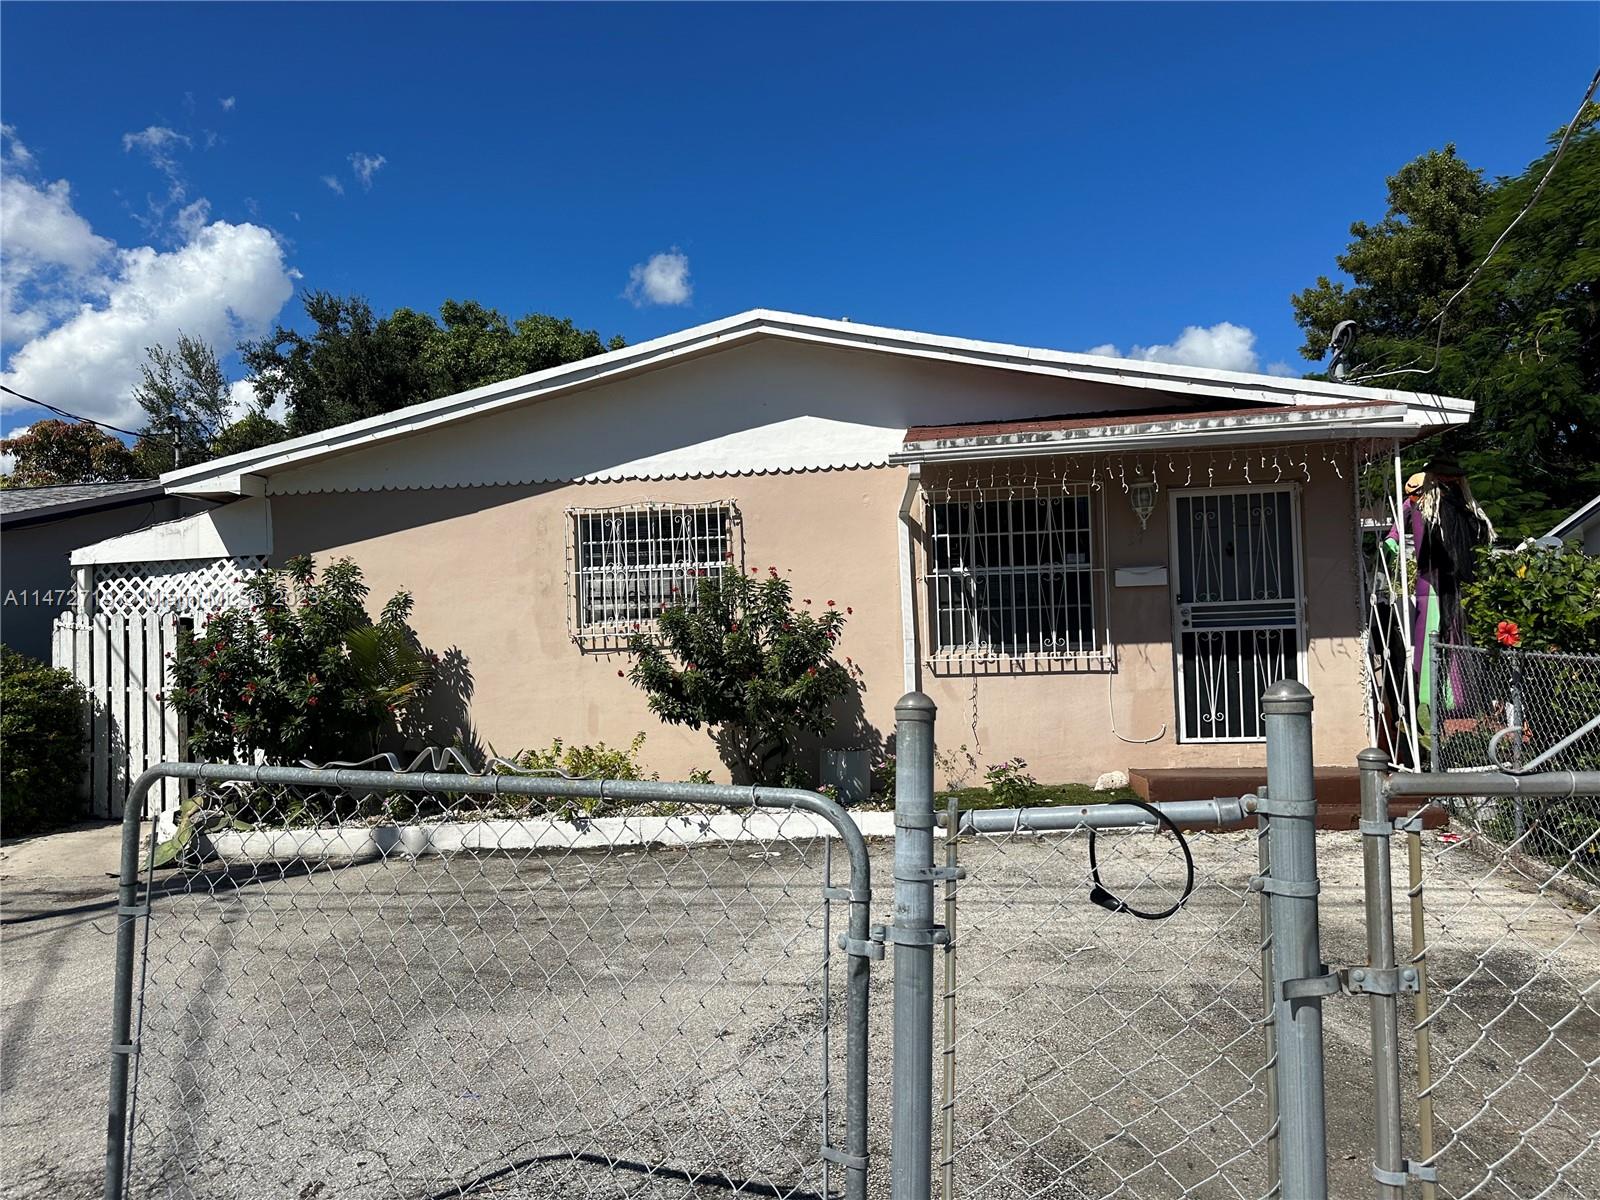 Rental Property at 57 Nw 34th St St, Miami, Broward County, Florida -  - $1,399,000 MO.